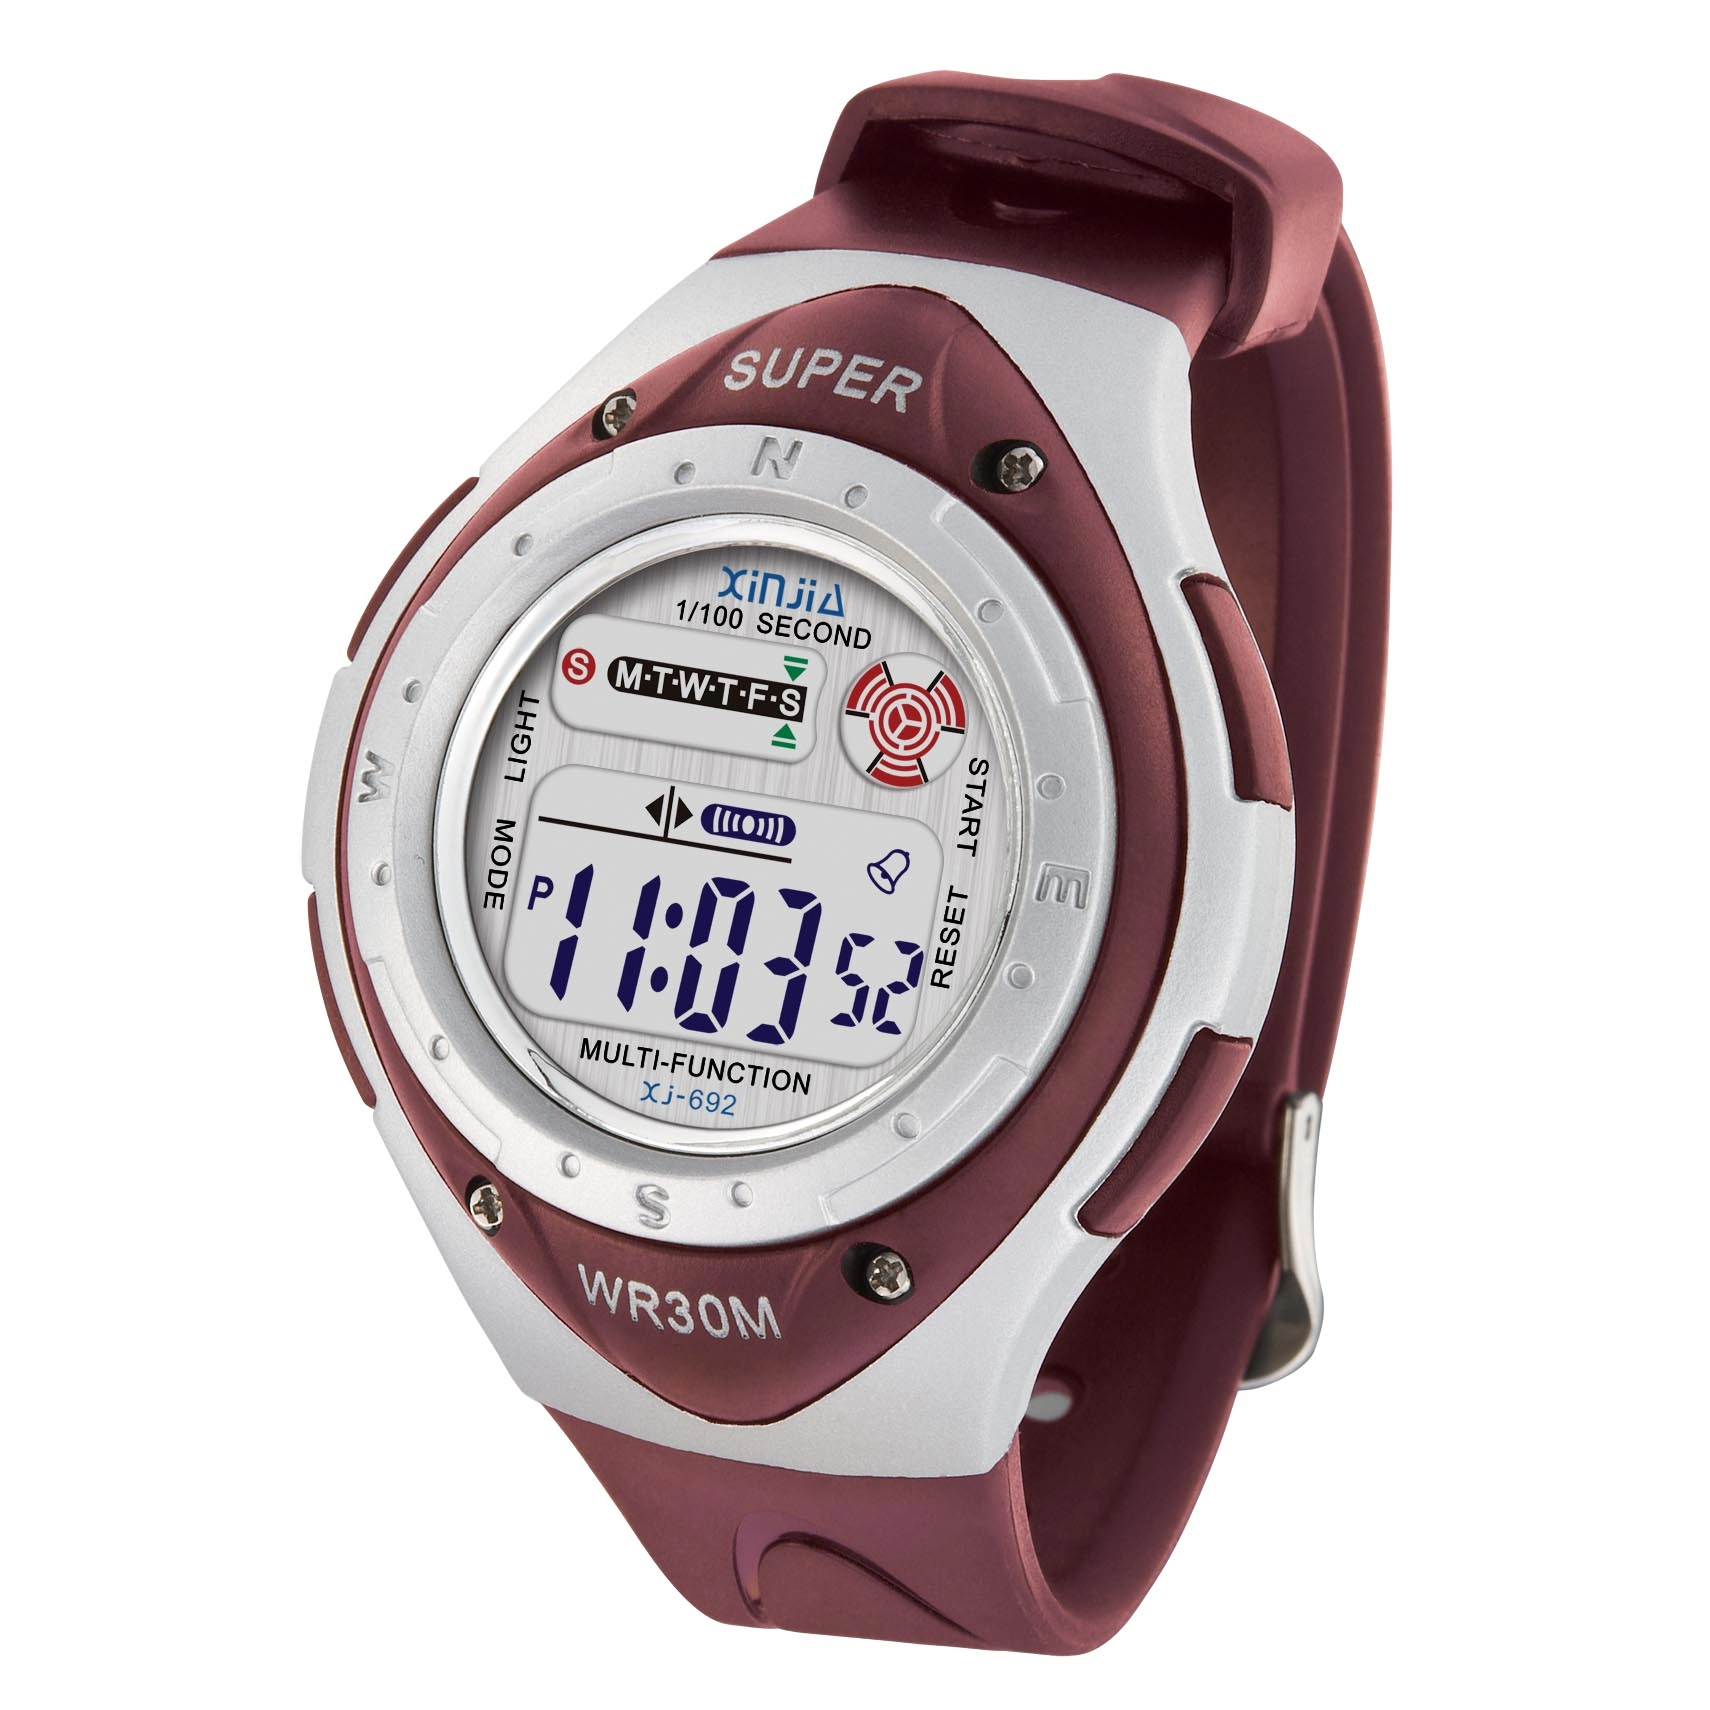 Super Series Digital Water Resistant Sport Mens Wrist Watch